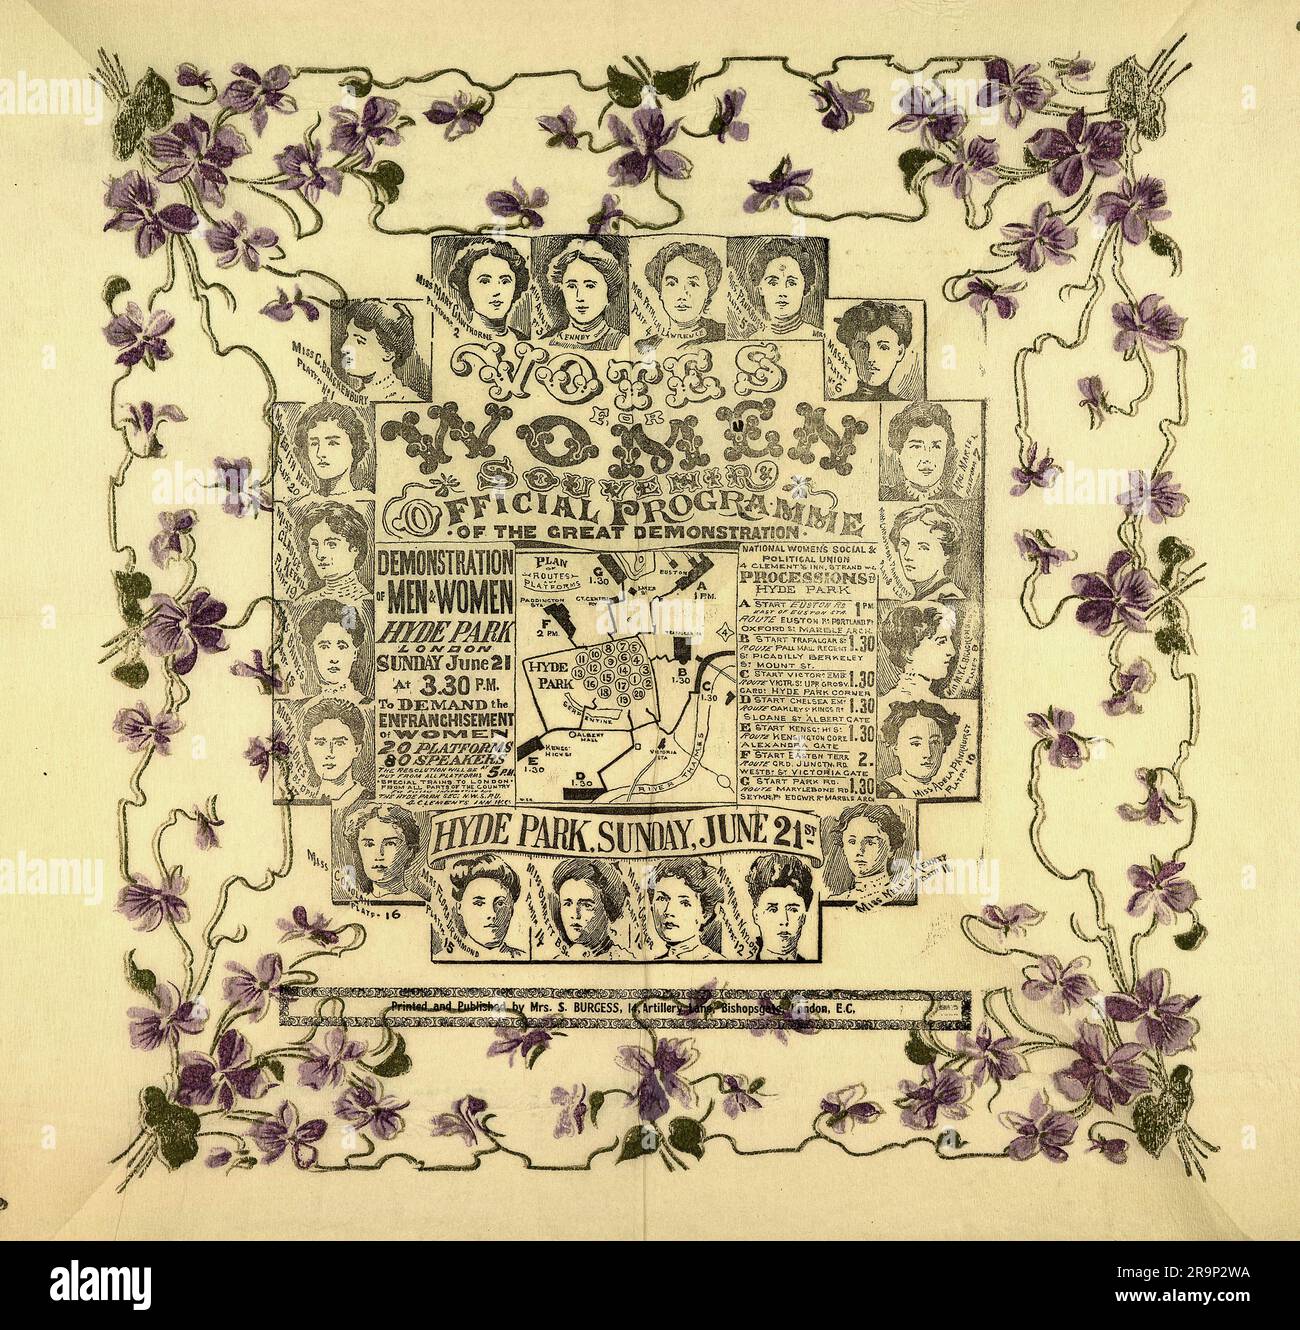 Le programme officiel de la manifestation du suffrage des femmes, qui s'est tenue à Hyde Park, représente une carte montrant l'itinéraire des sept processions et le placement des vingt podiums sur lesquels les suffragettes, représentées dans les portraits environnants, déclament leurs discours. 21 juin 1908 Banque D'Images